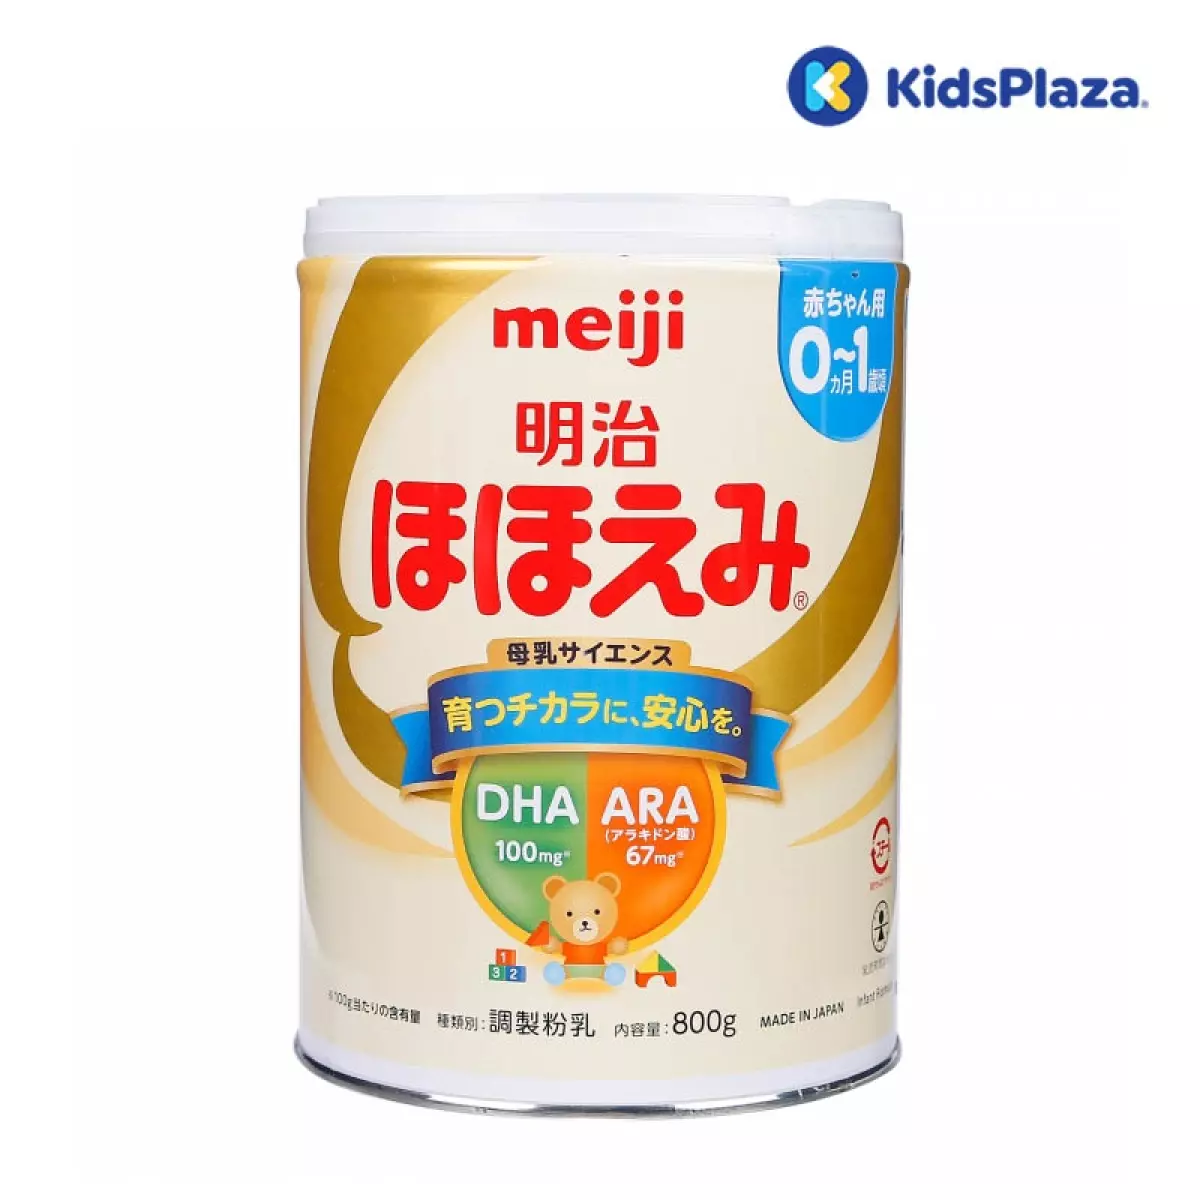 sữa meiji số 0 nội địa nhật 800g cho bé 0-1 tuổi